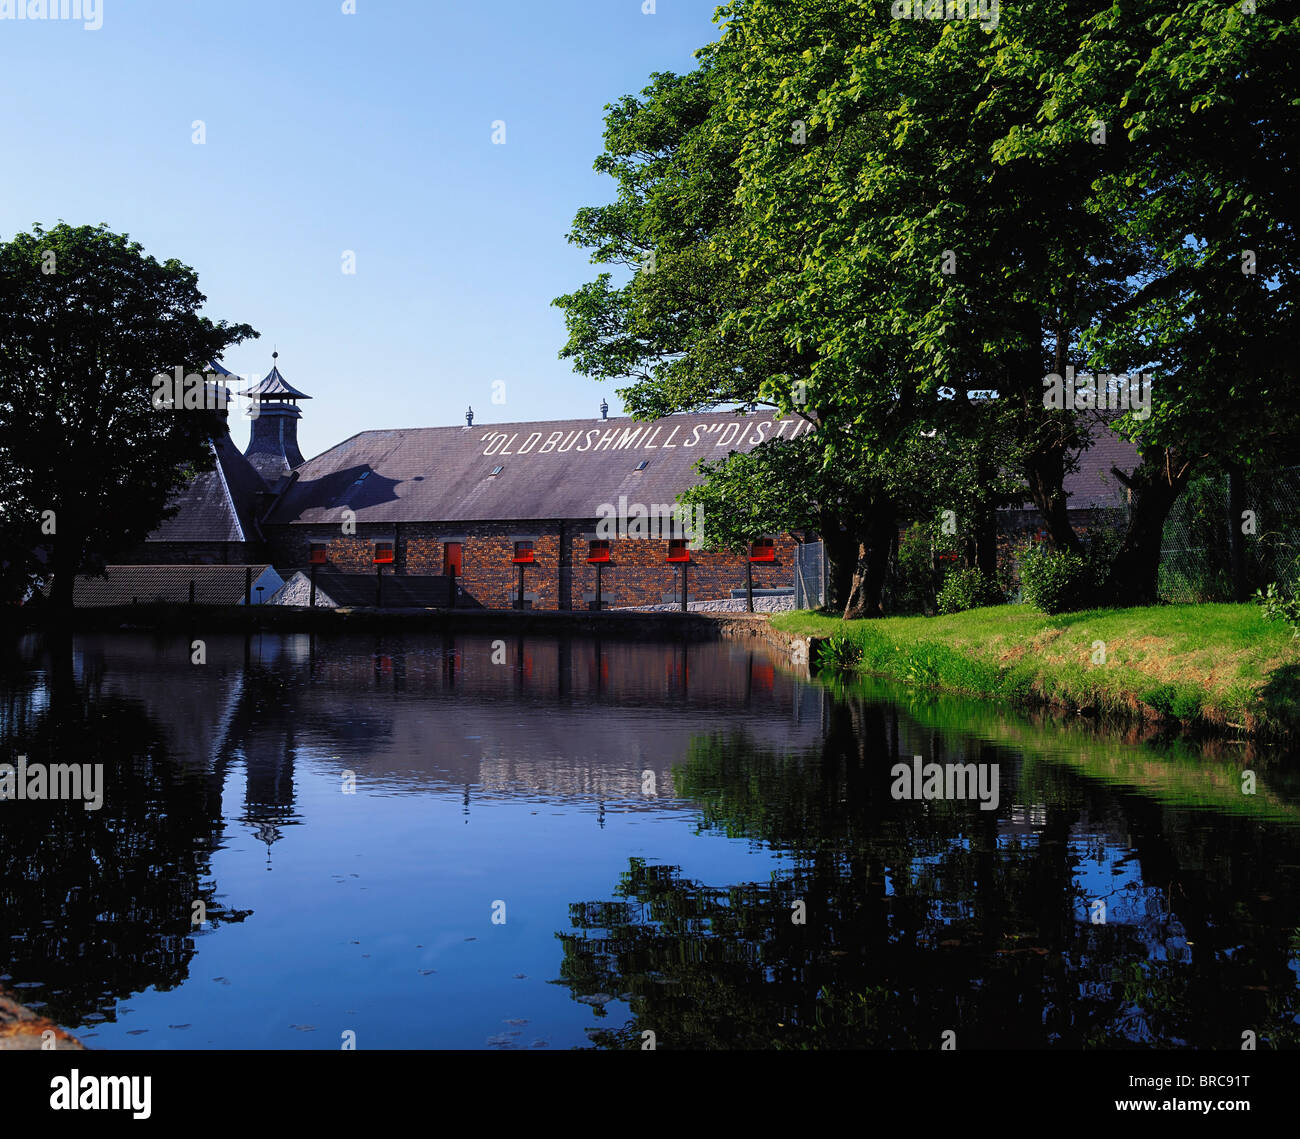 Alten Bushmills Distillery, Co. Antrim, Irland, weltweit älteste lizenzierte Whiskeybrennerei Stockfoto